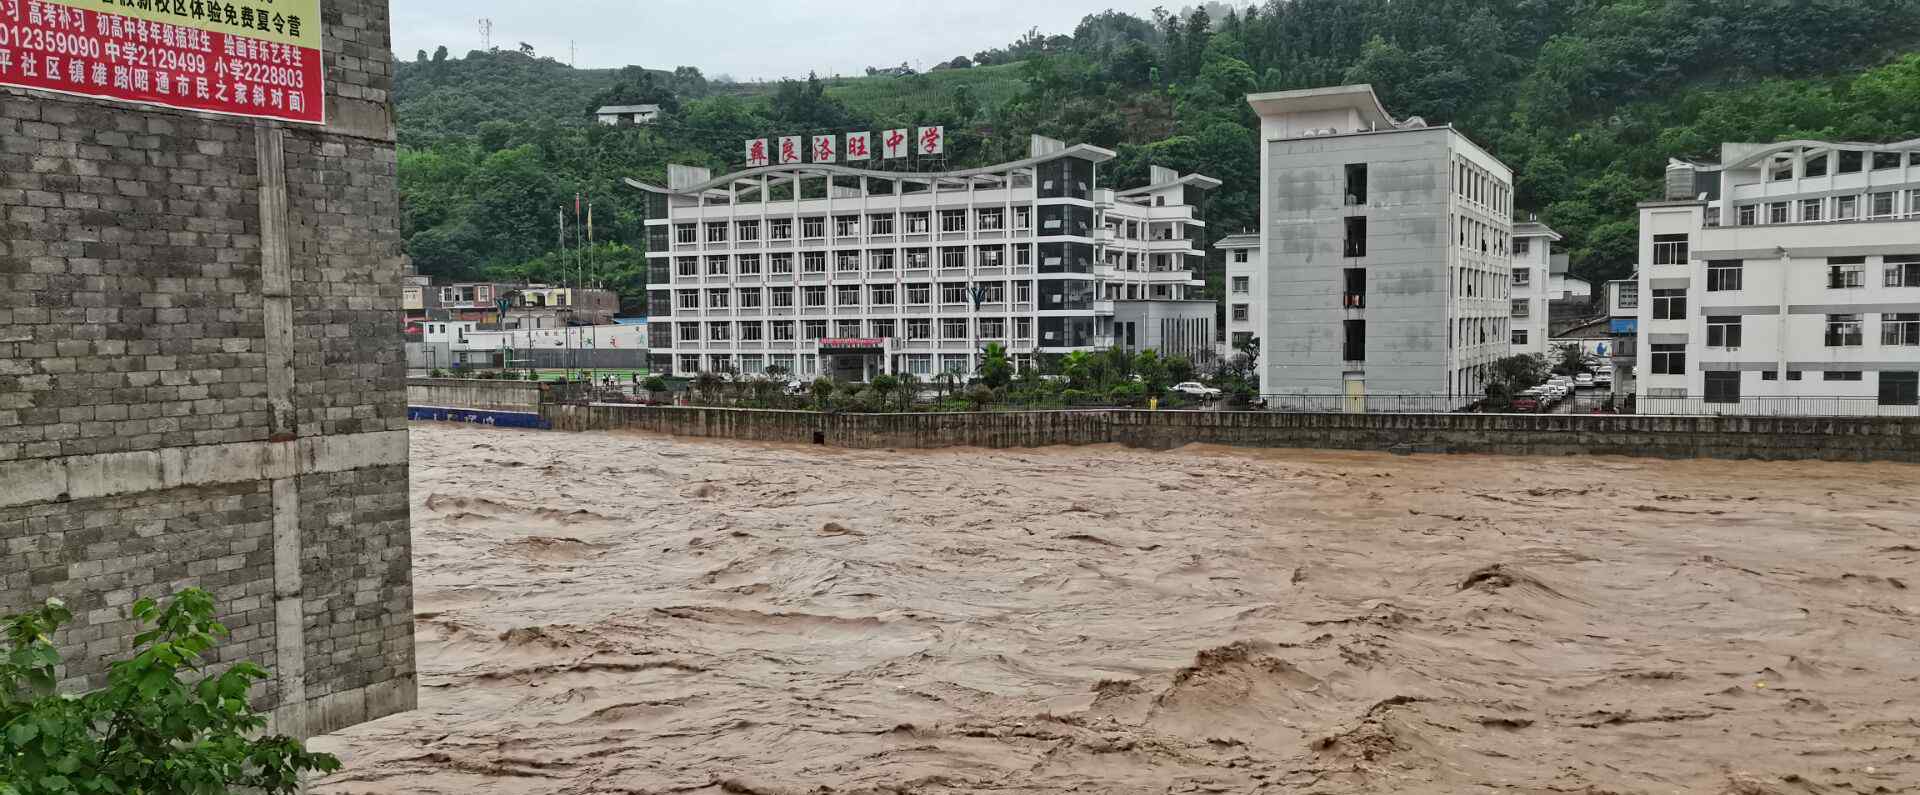 云南昭通多地遭遇暴雨山洪泥石流 转移疏散群众822人